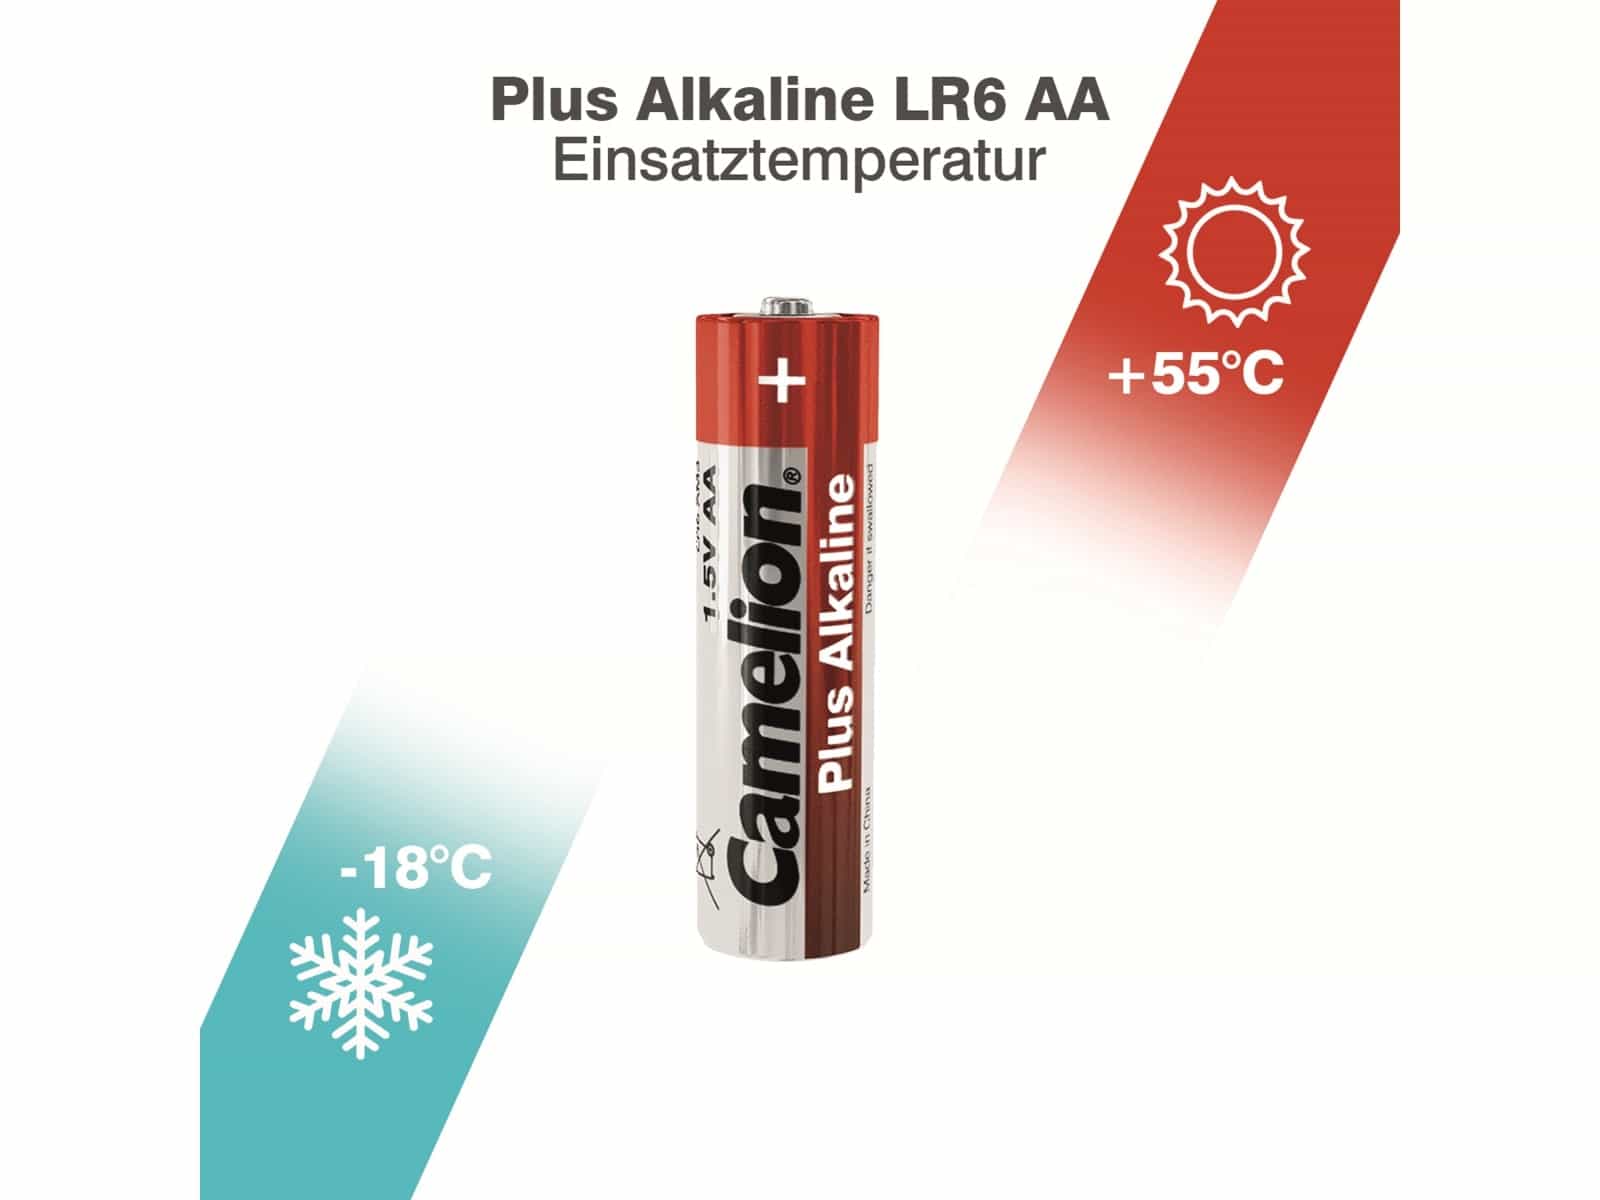 CAMELION Mignon-Batterie, Plus-Alkaline, LR6, 20 Stück